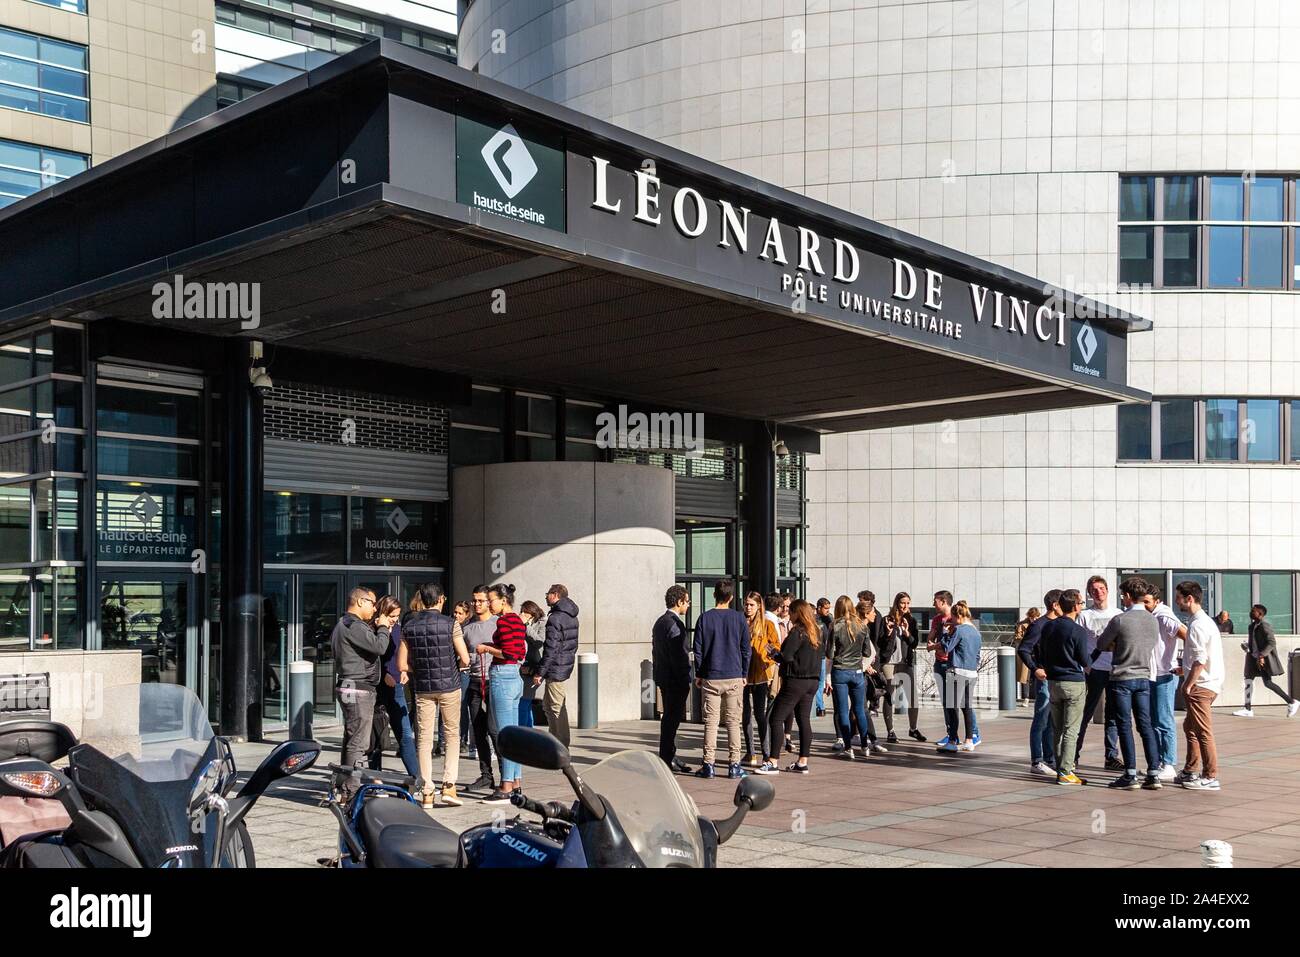 Gli studenti di fronte al Leonard de Vinci University, PARIGI-LA DEFENSE COURBEVOIE, Francia Foto Stock